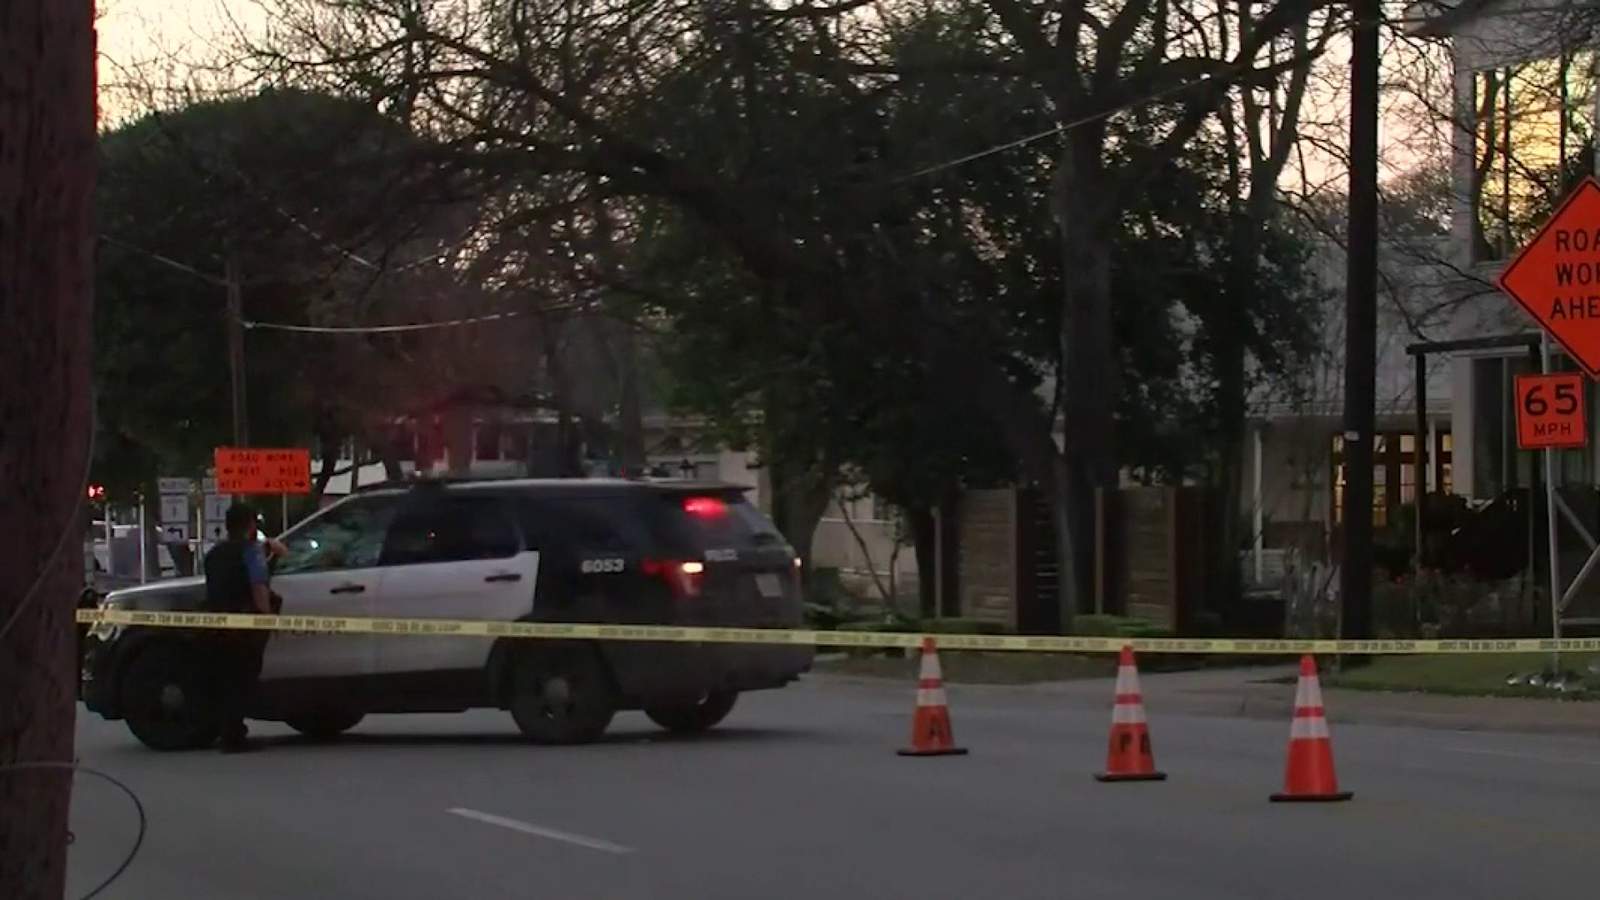 2 dead following hours-long standoff in Austin